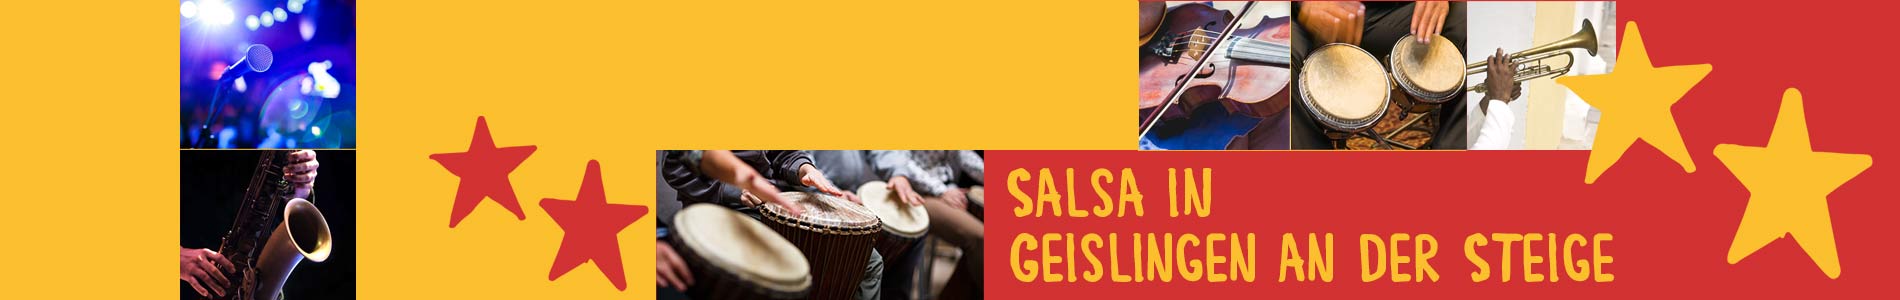 Salsa in Geislingen an der Steige – Salsa lernen und tanzen, Tanzkurse, Partys, Veranstaltungen